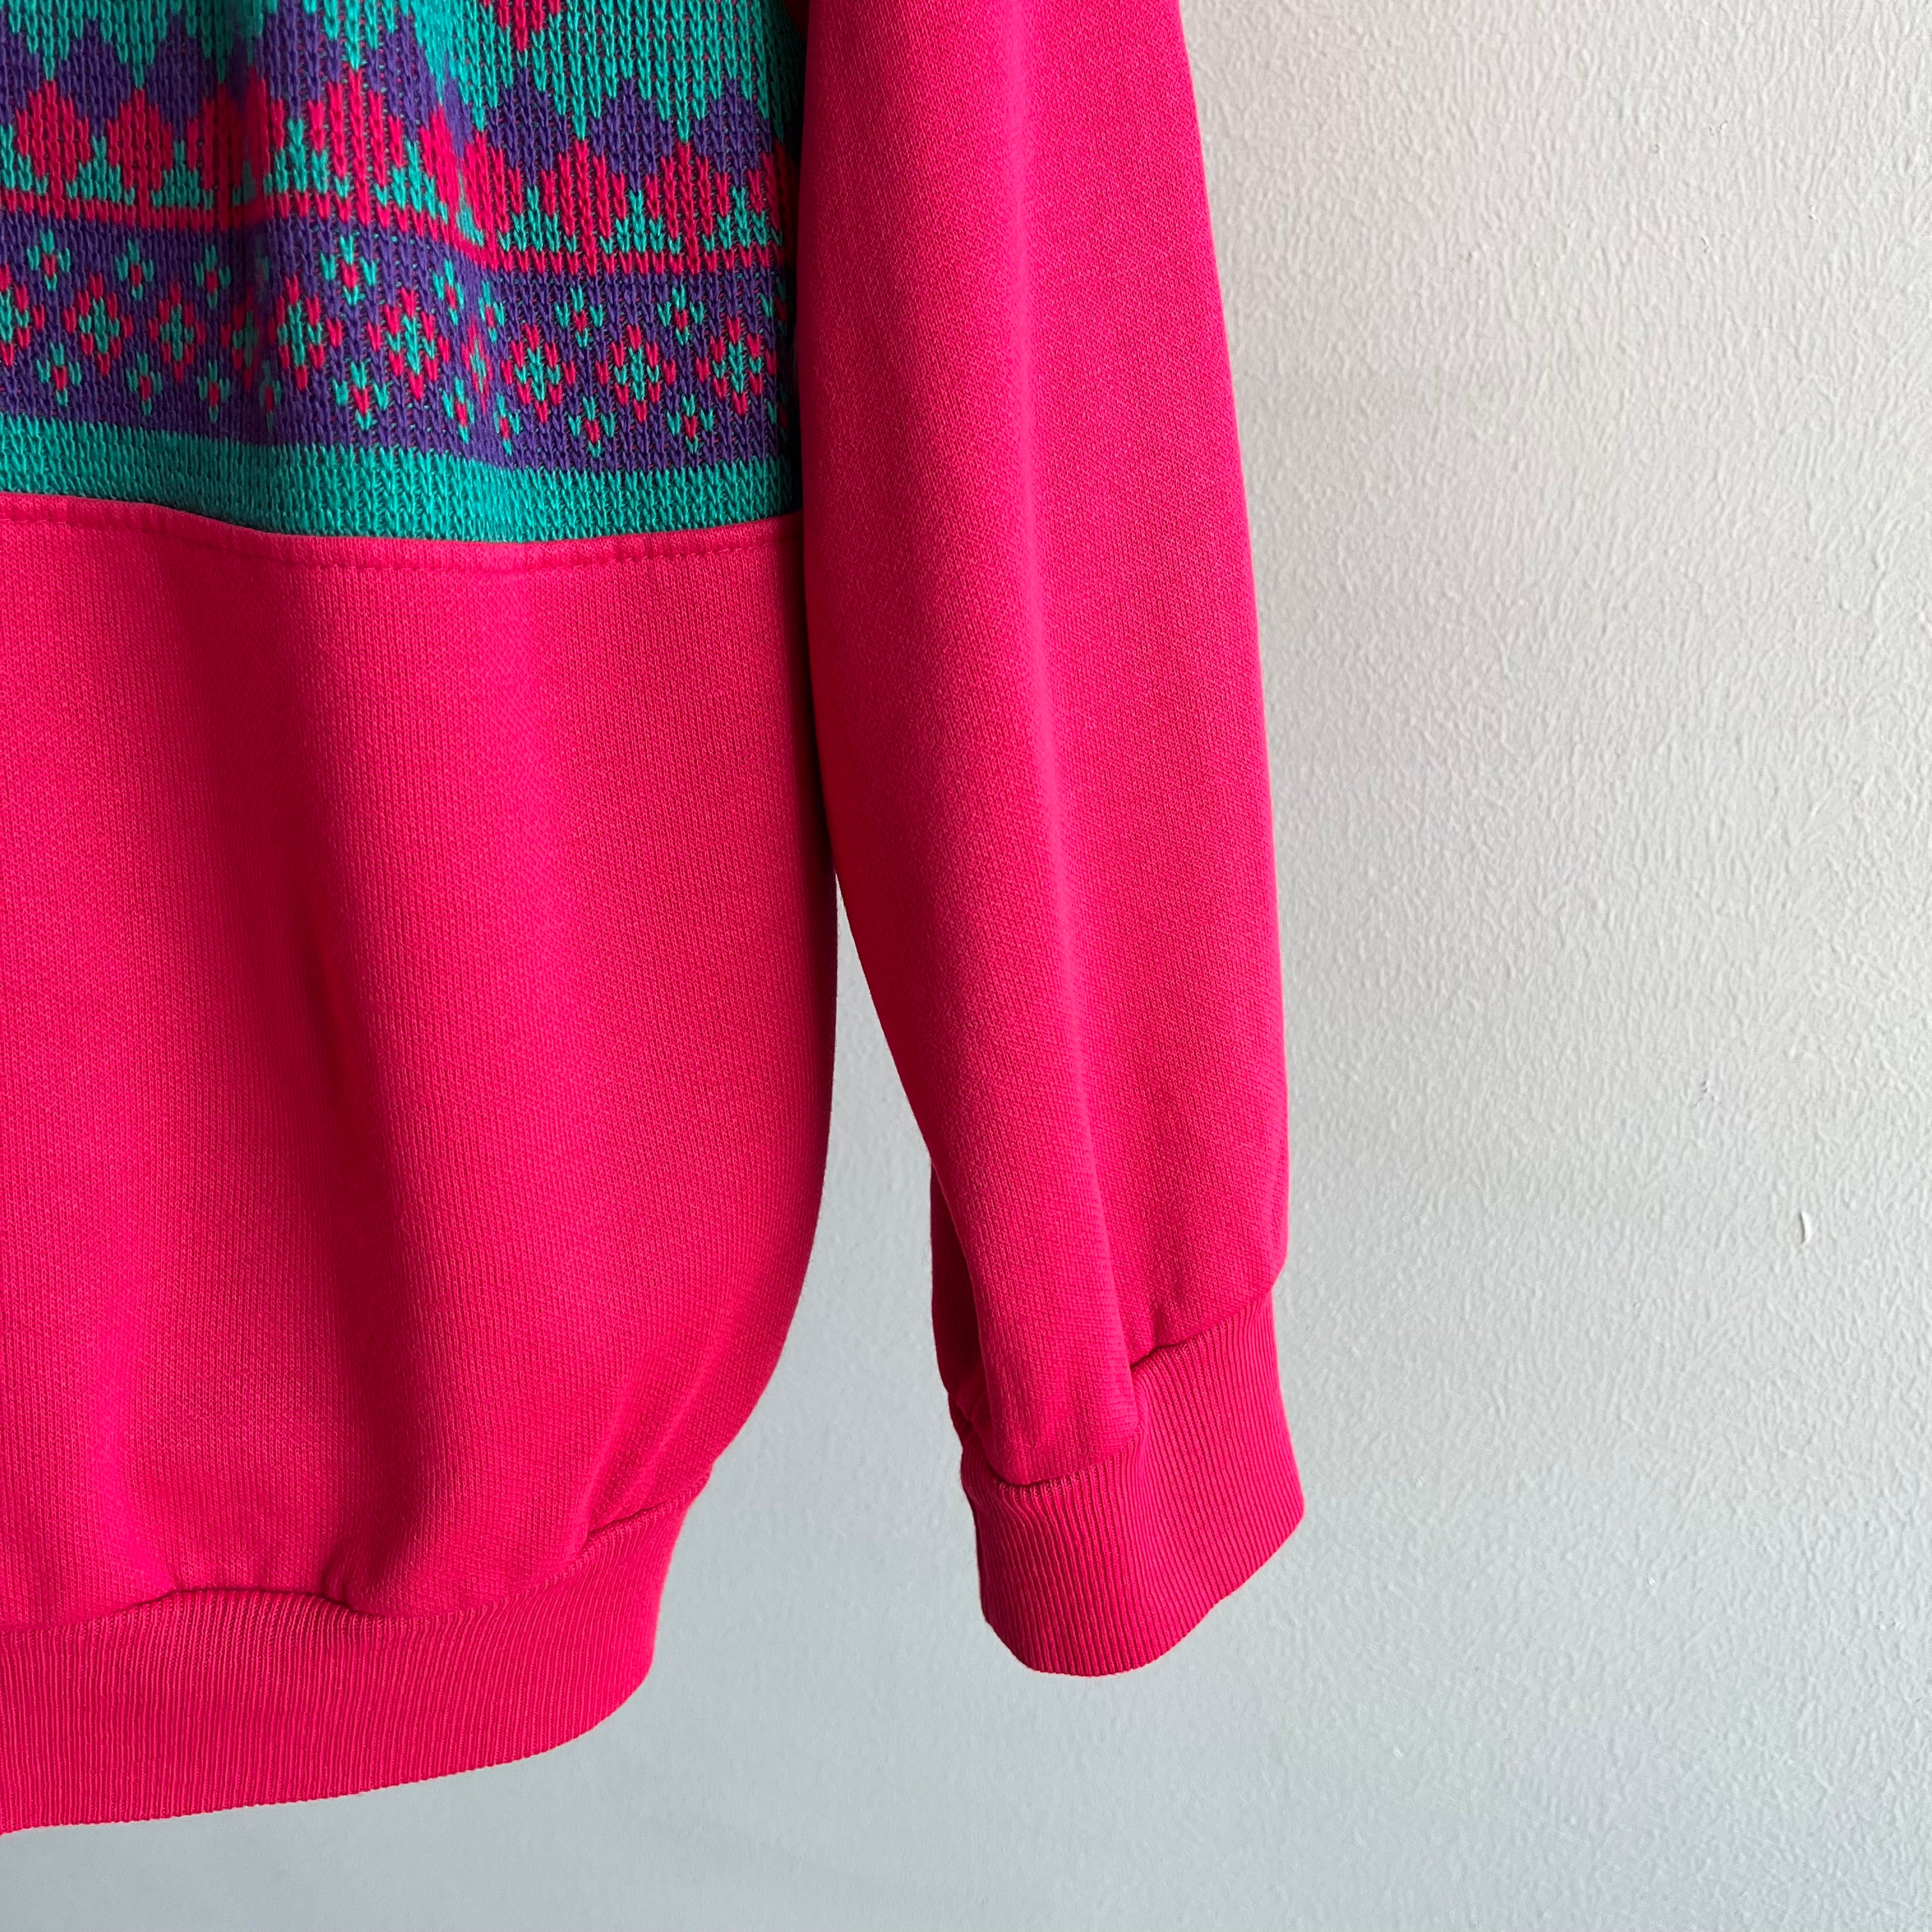 1980s Chic Grandma Polo Knit Sweatshirt